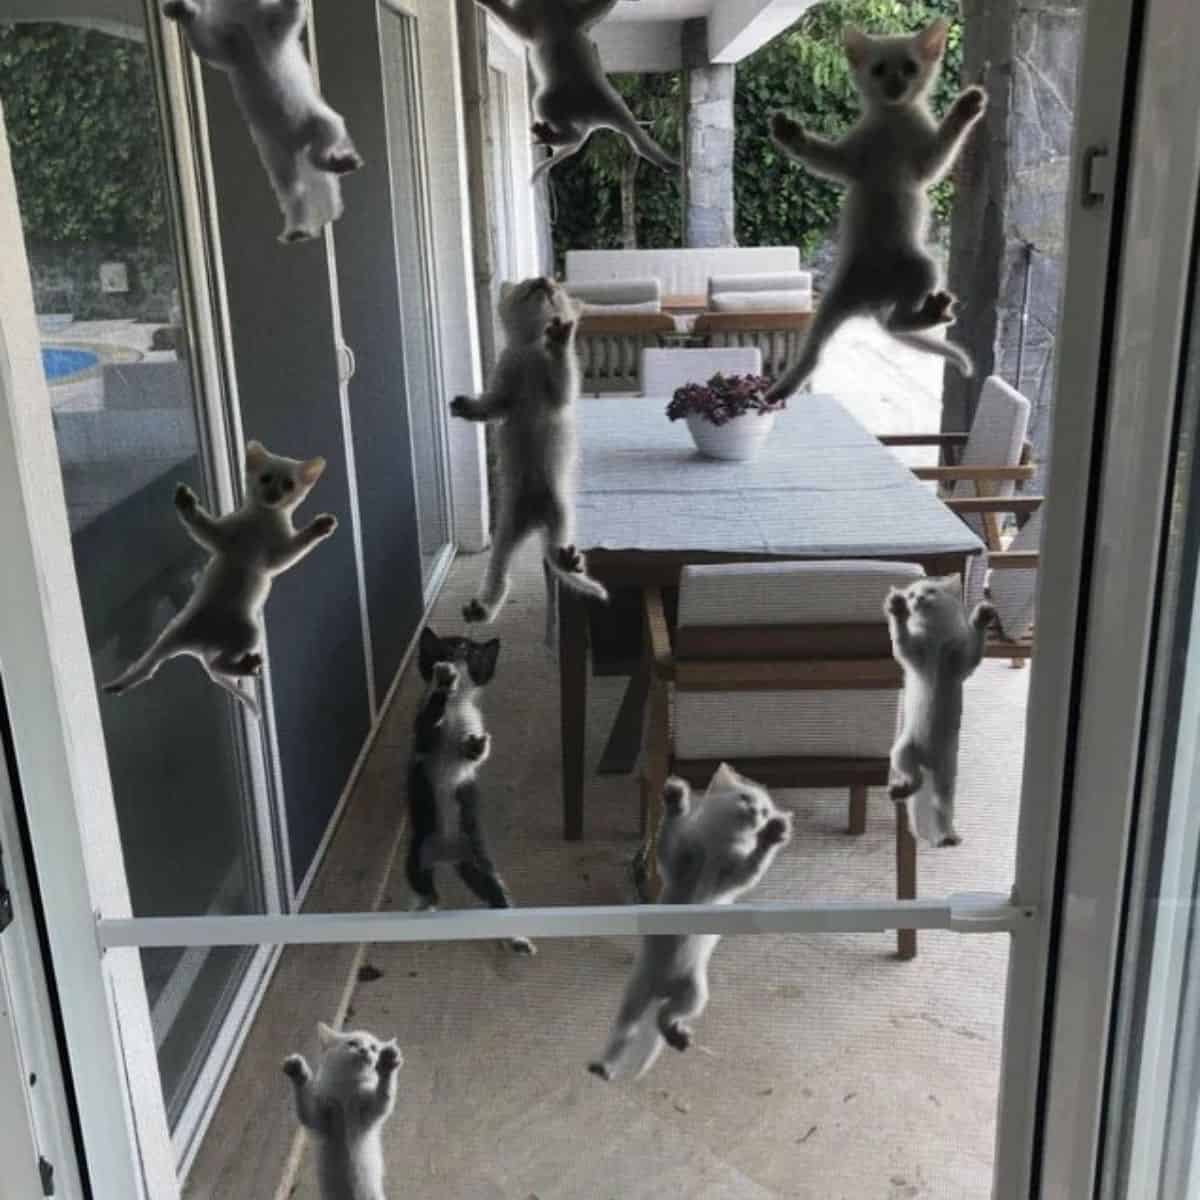 kittens on the balcony door